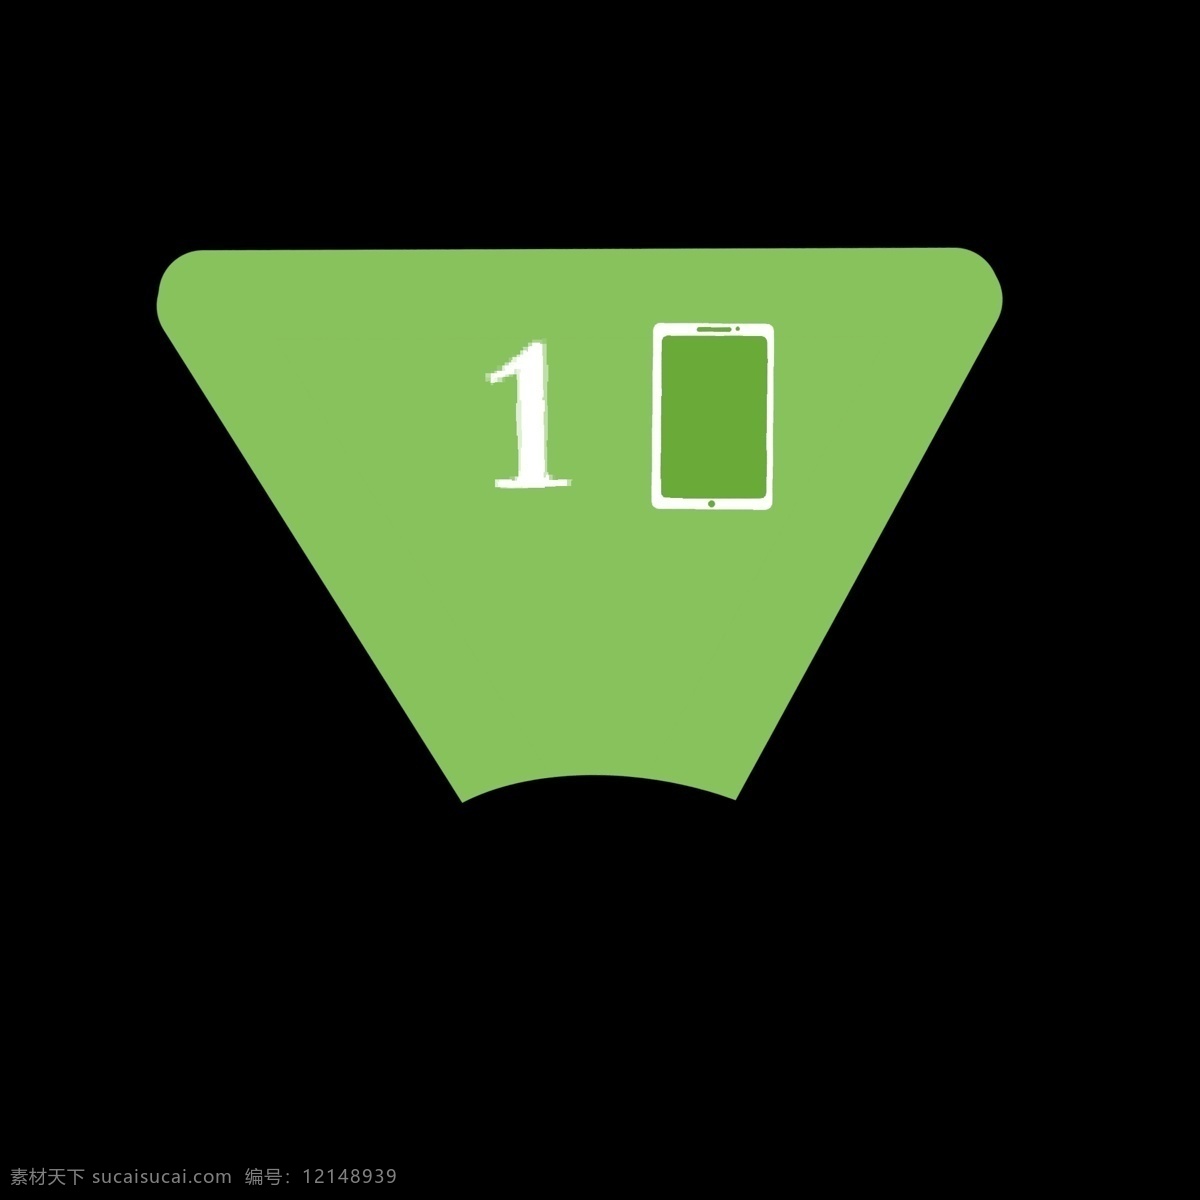 绿色 倒三角 手机 符号 分类 图标 冷色 数字 手机符号 分开 简洁 简约 简单 卡通 ppt专用 分别介绍模板 色块 几何形体